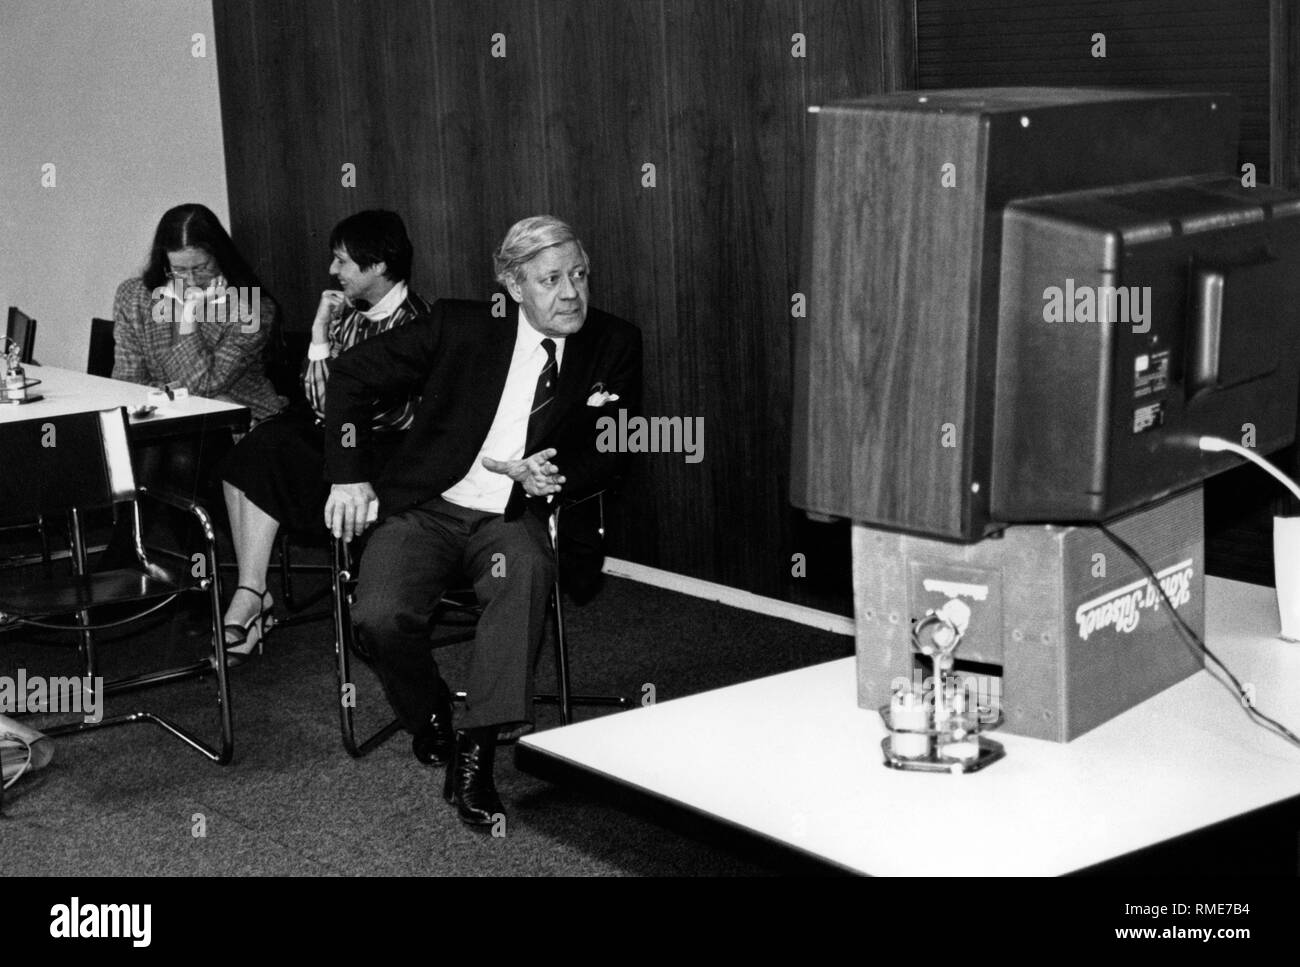 Der ehemalige Bundeskanzler Helmut Schmidt sieht an ein Fernsehgerät auf ein Bier Kasten von Koenig Pilsener (undatiert). Stockfoto